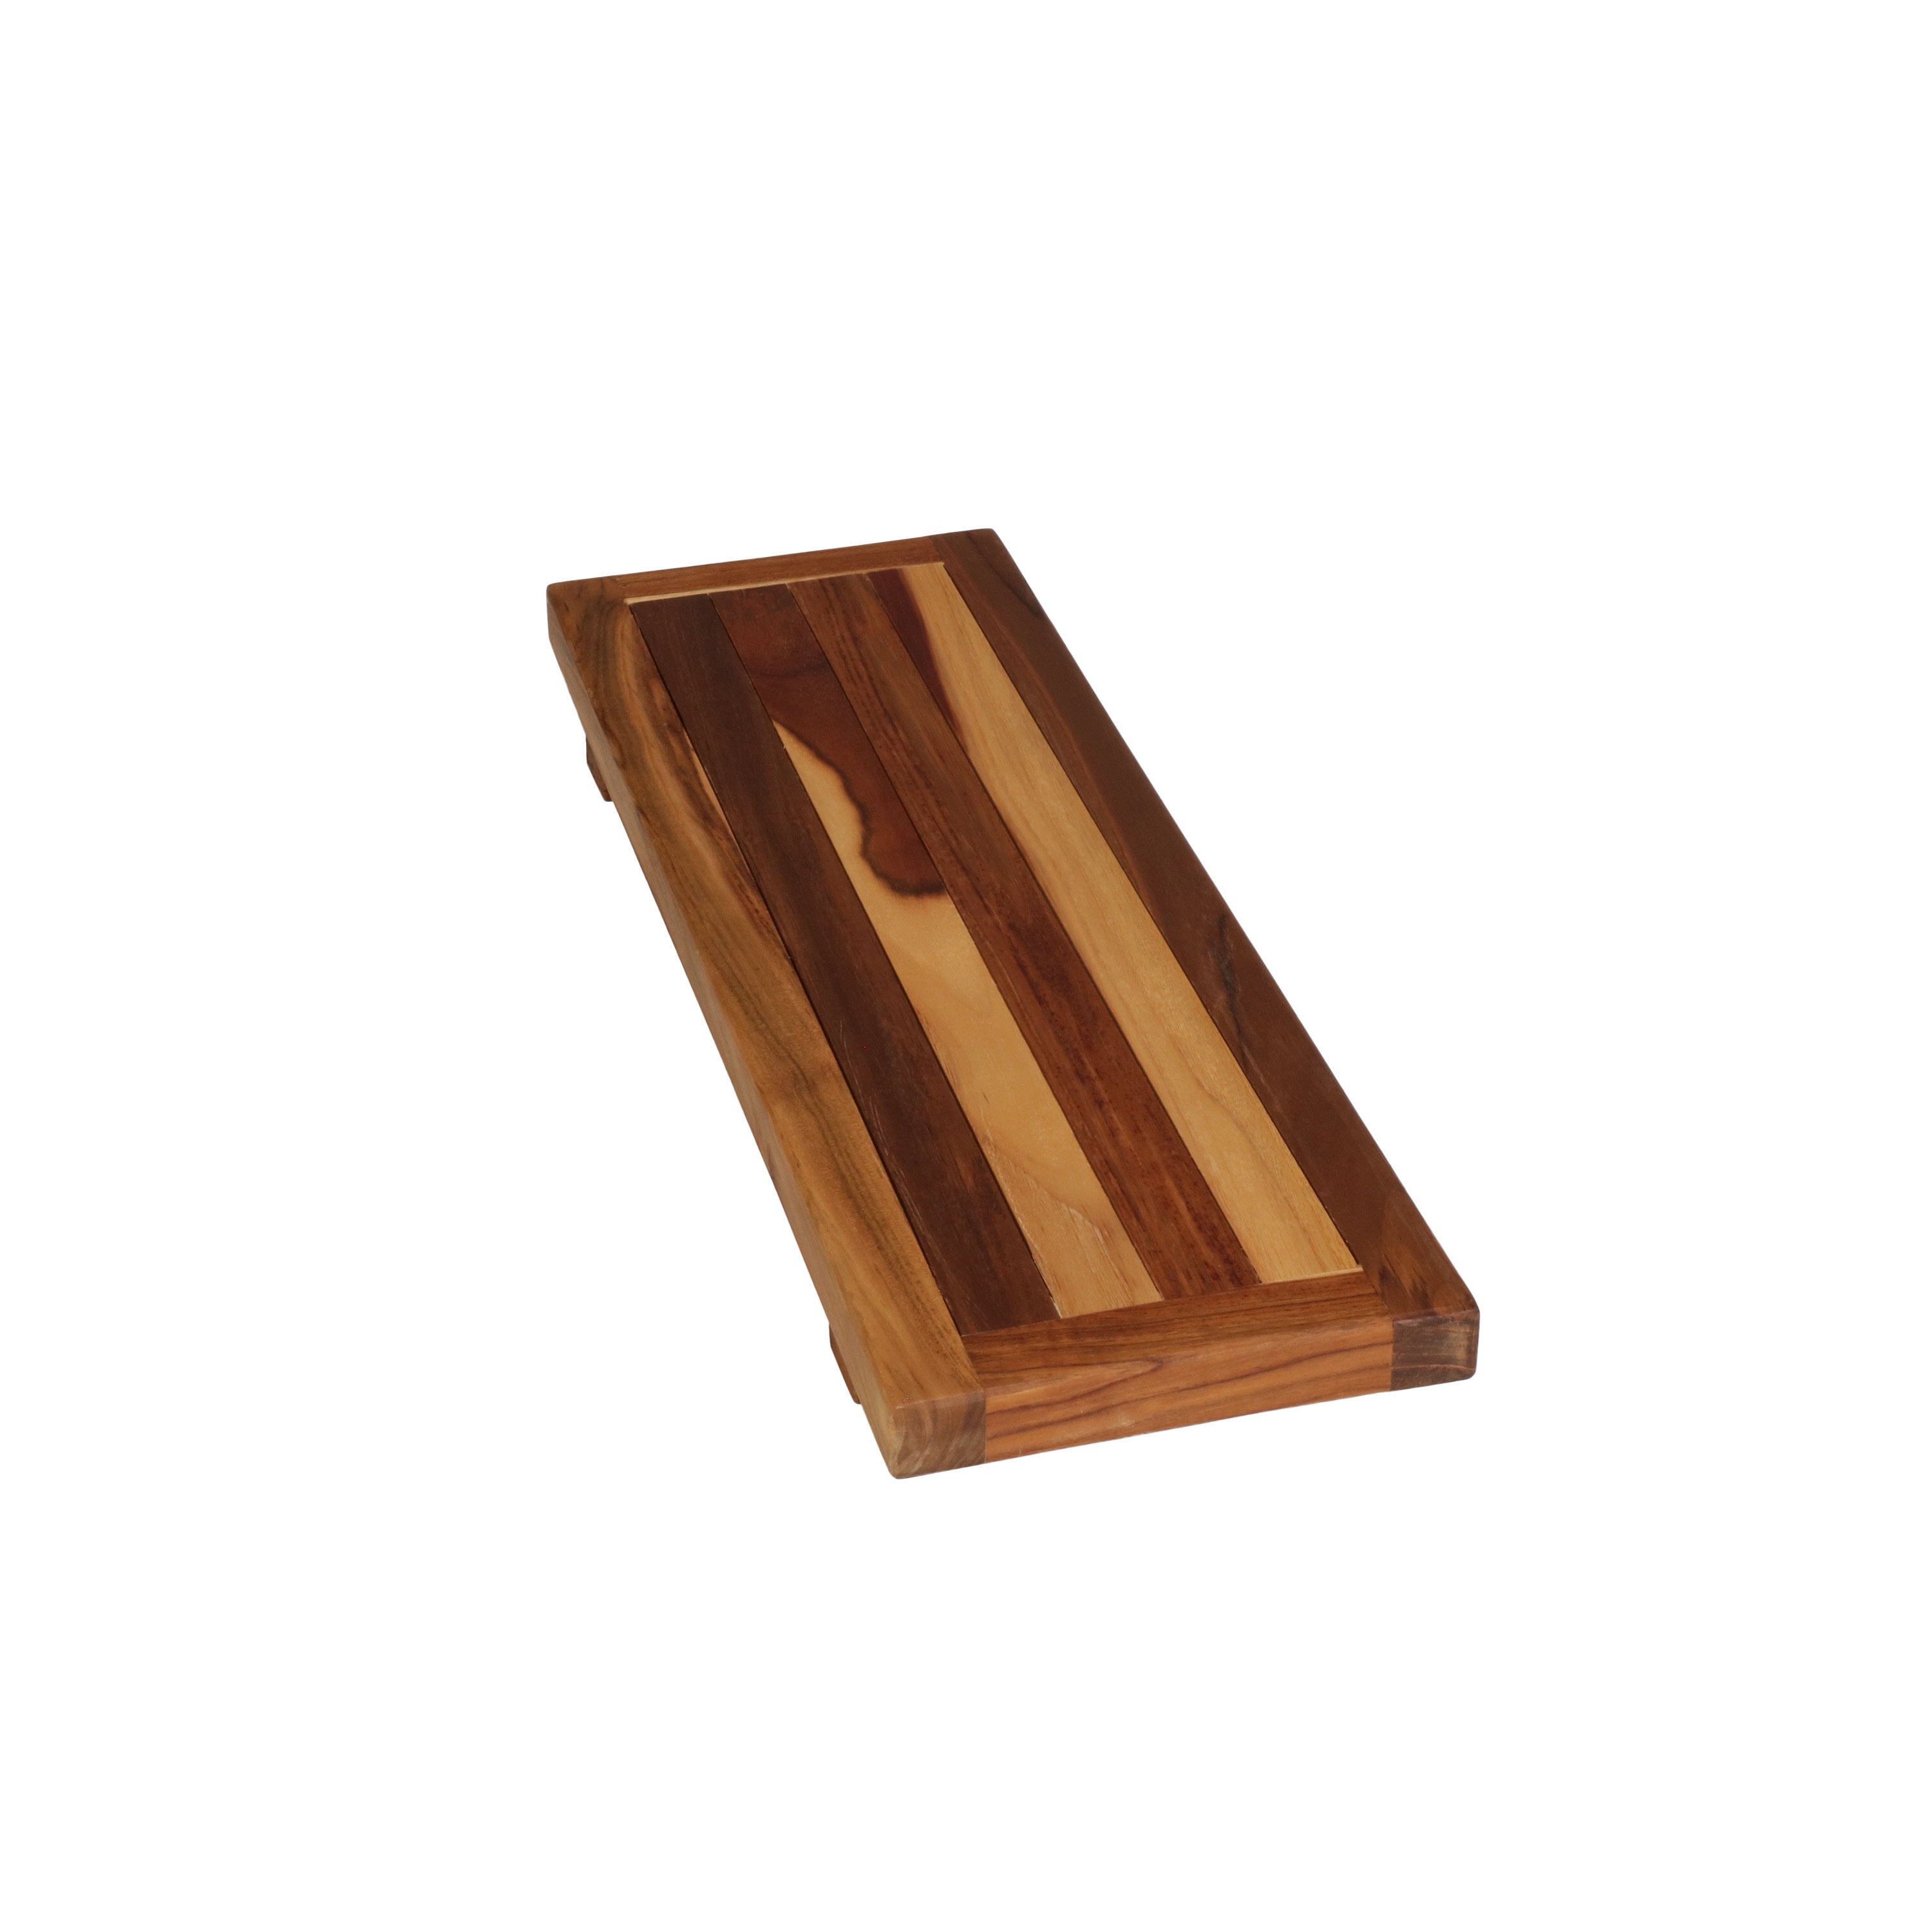 EcoDecors® Eleganto® 29" Teak Wood Bath Tray and Seat in EarthyTeak Finish - DecoTeak® Eleganto® 23”W Teak Floor Mat in a Woodland Brown Finish